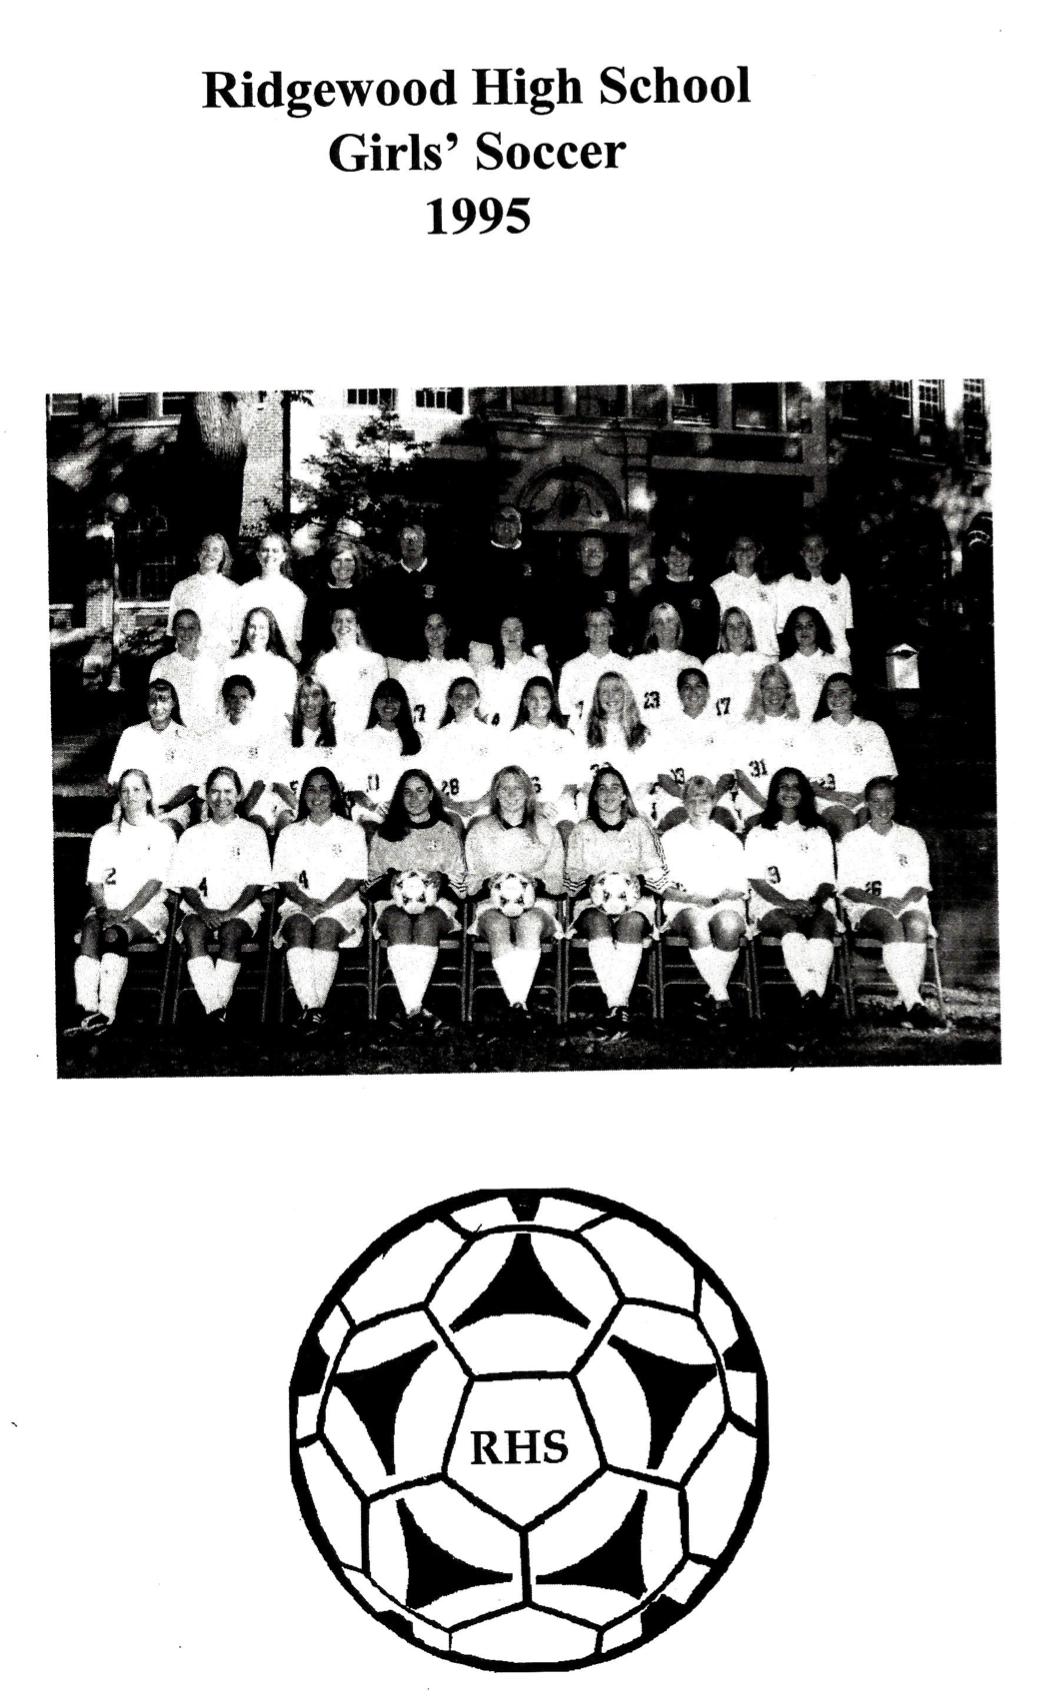 1995 Girls’ Soccer Team